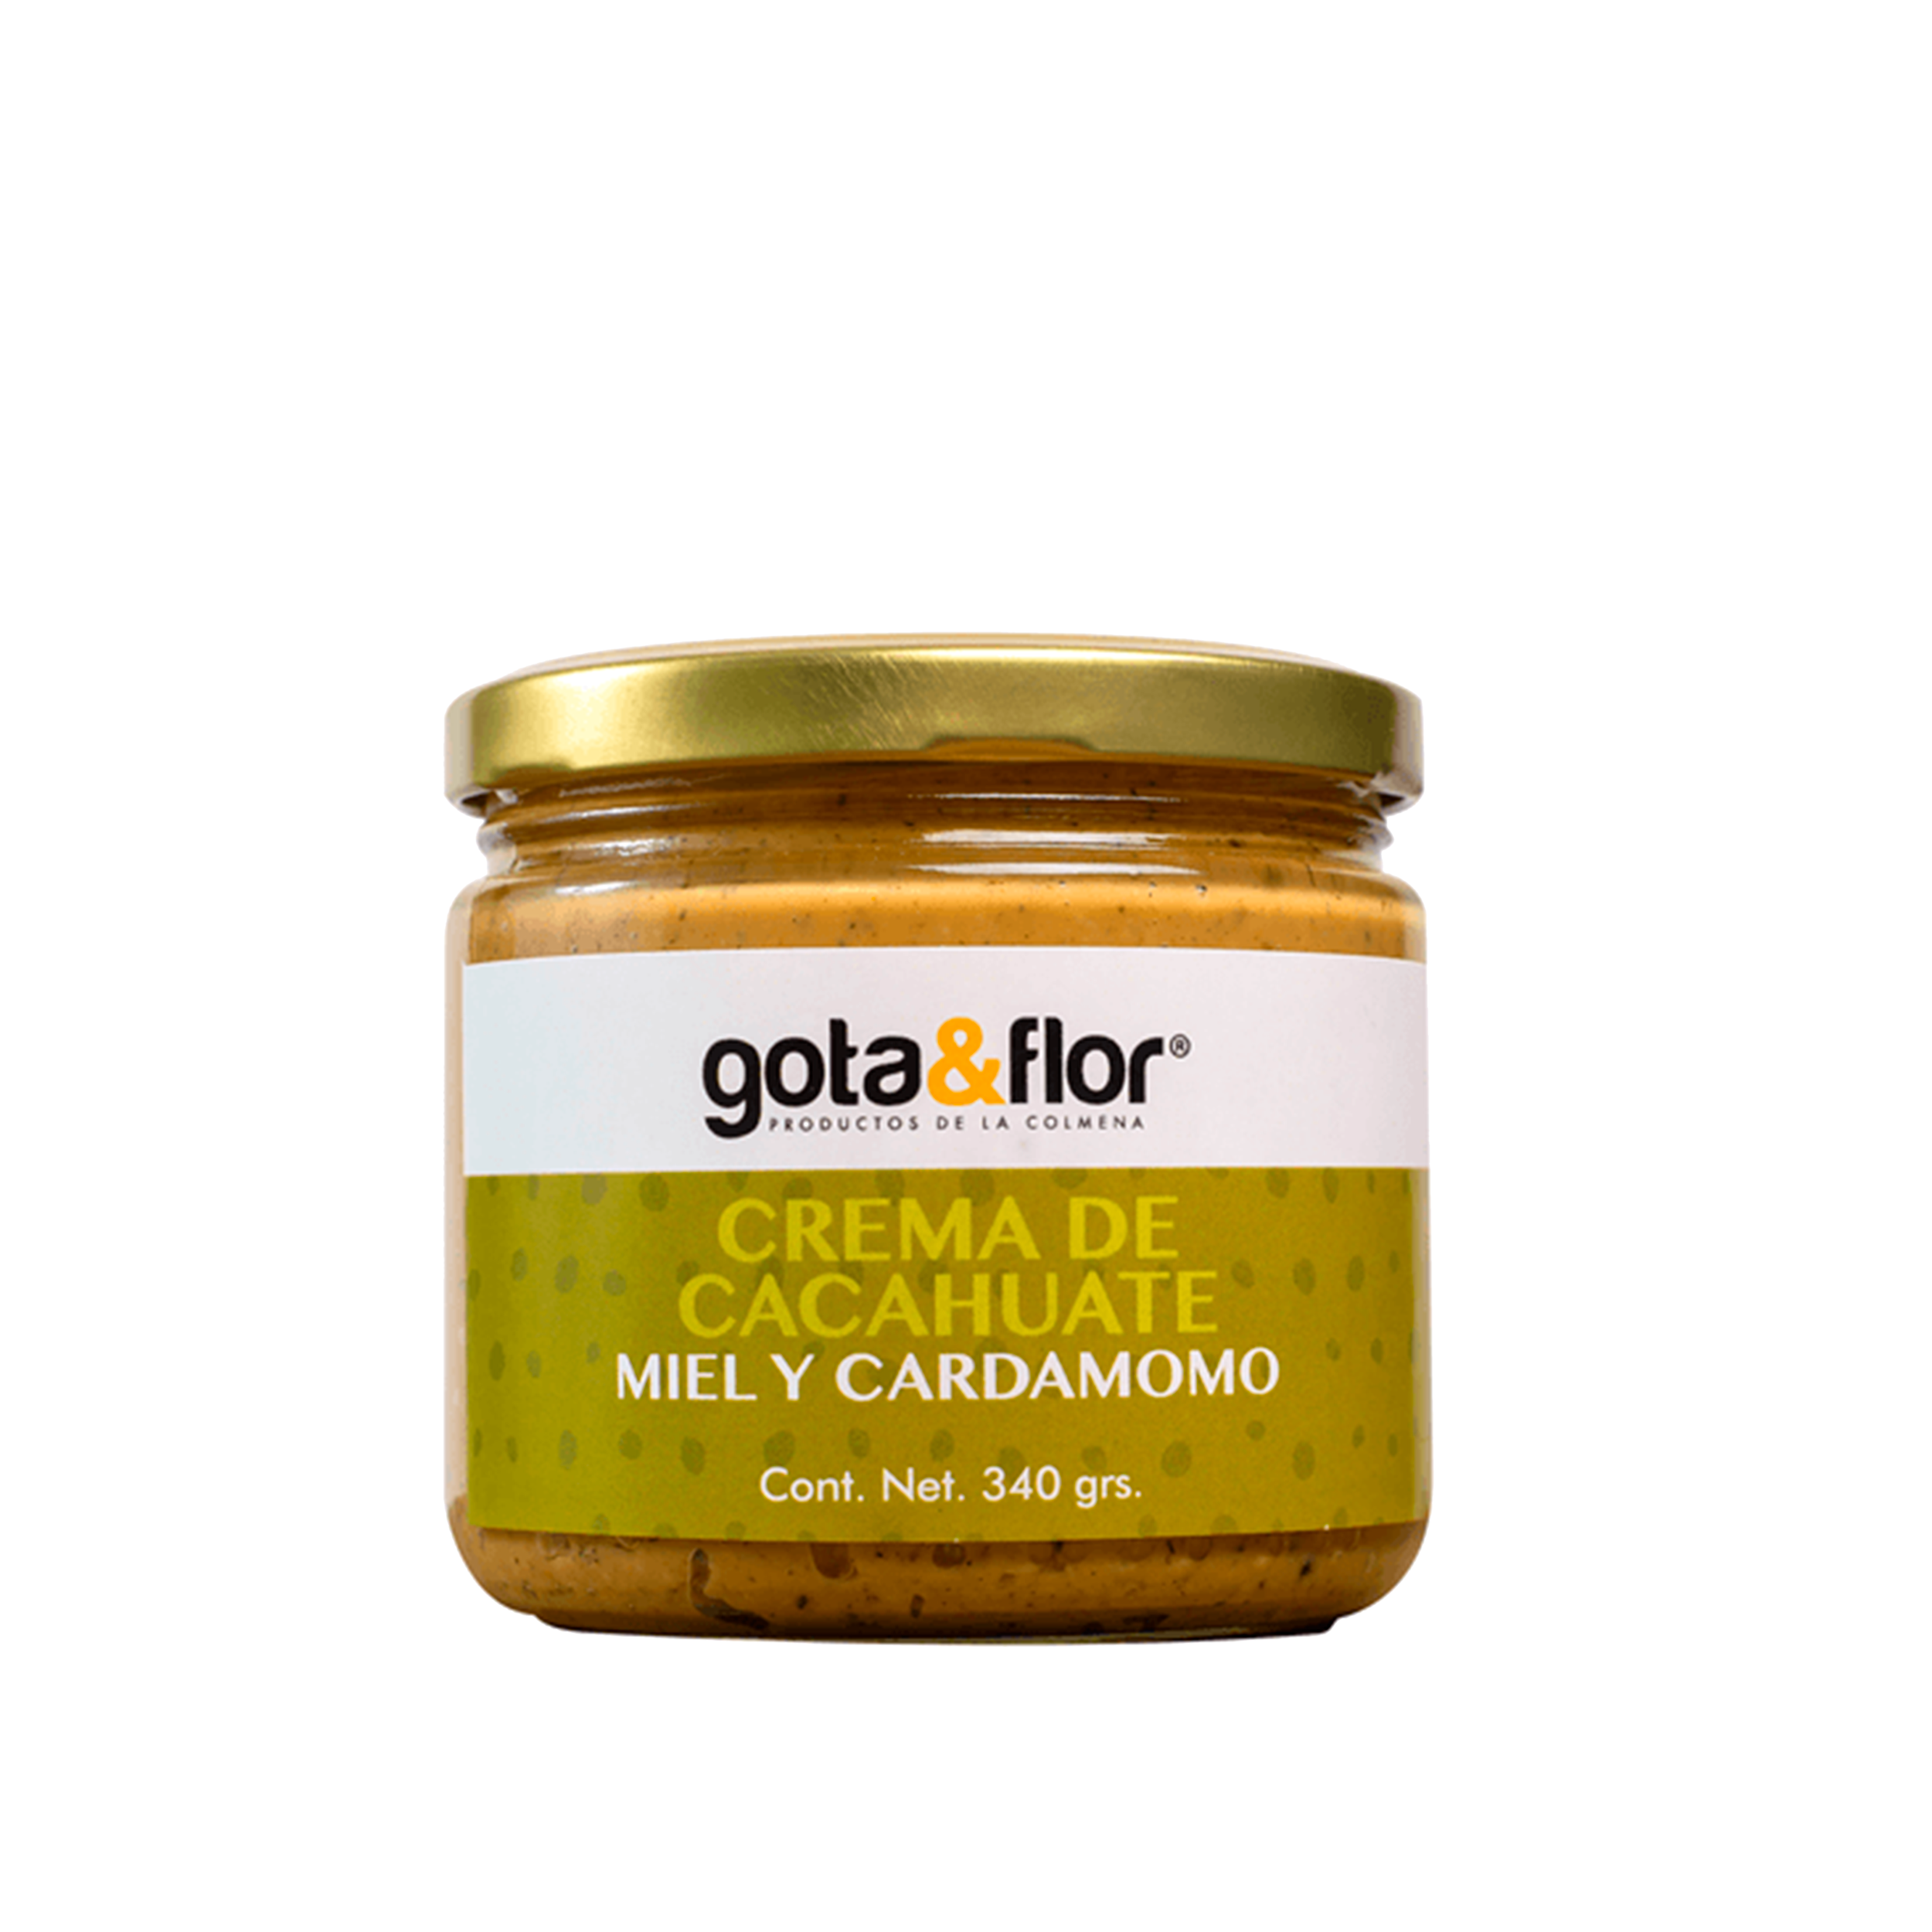 Gota y flor - Crema de cacahuate con miel+cardamomo